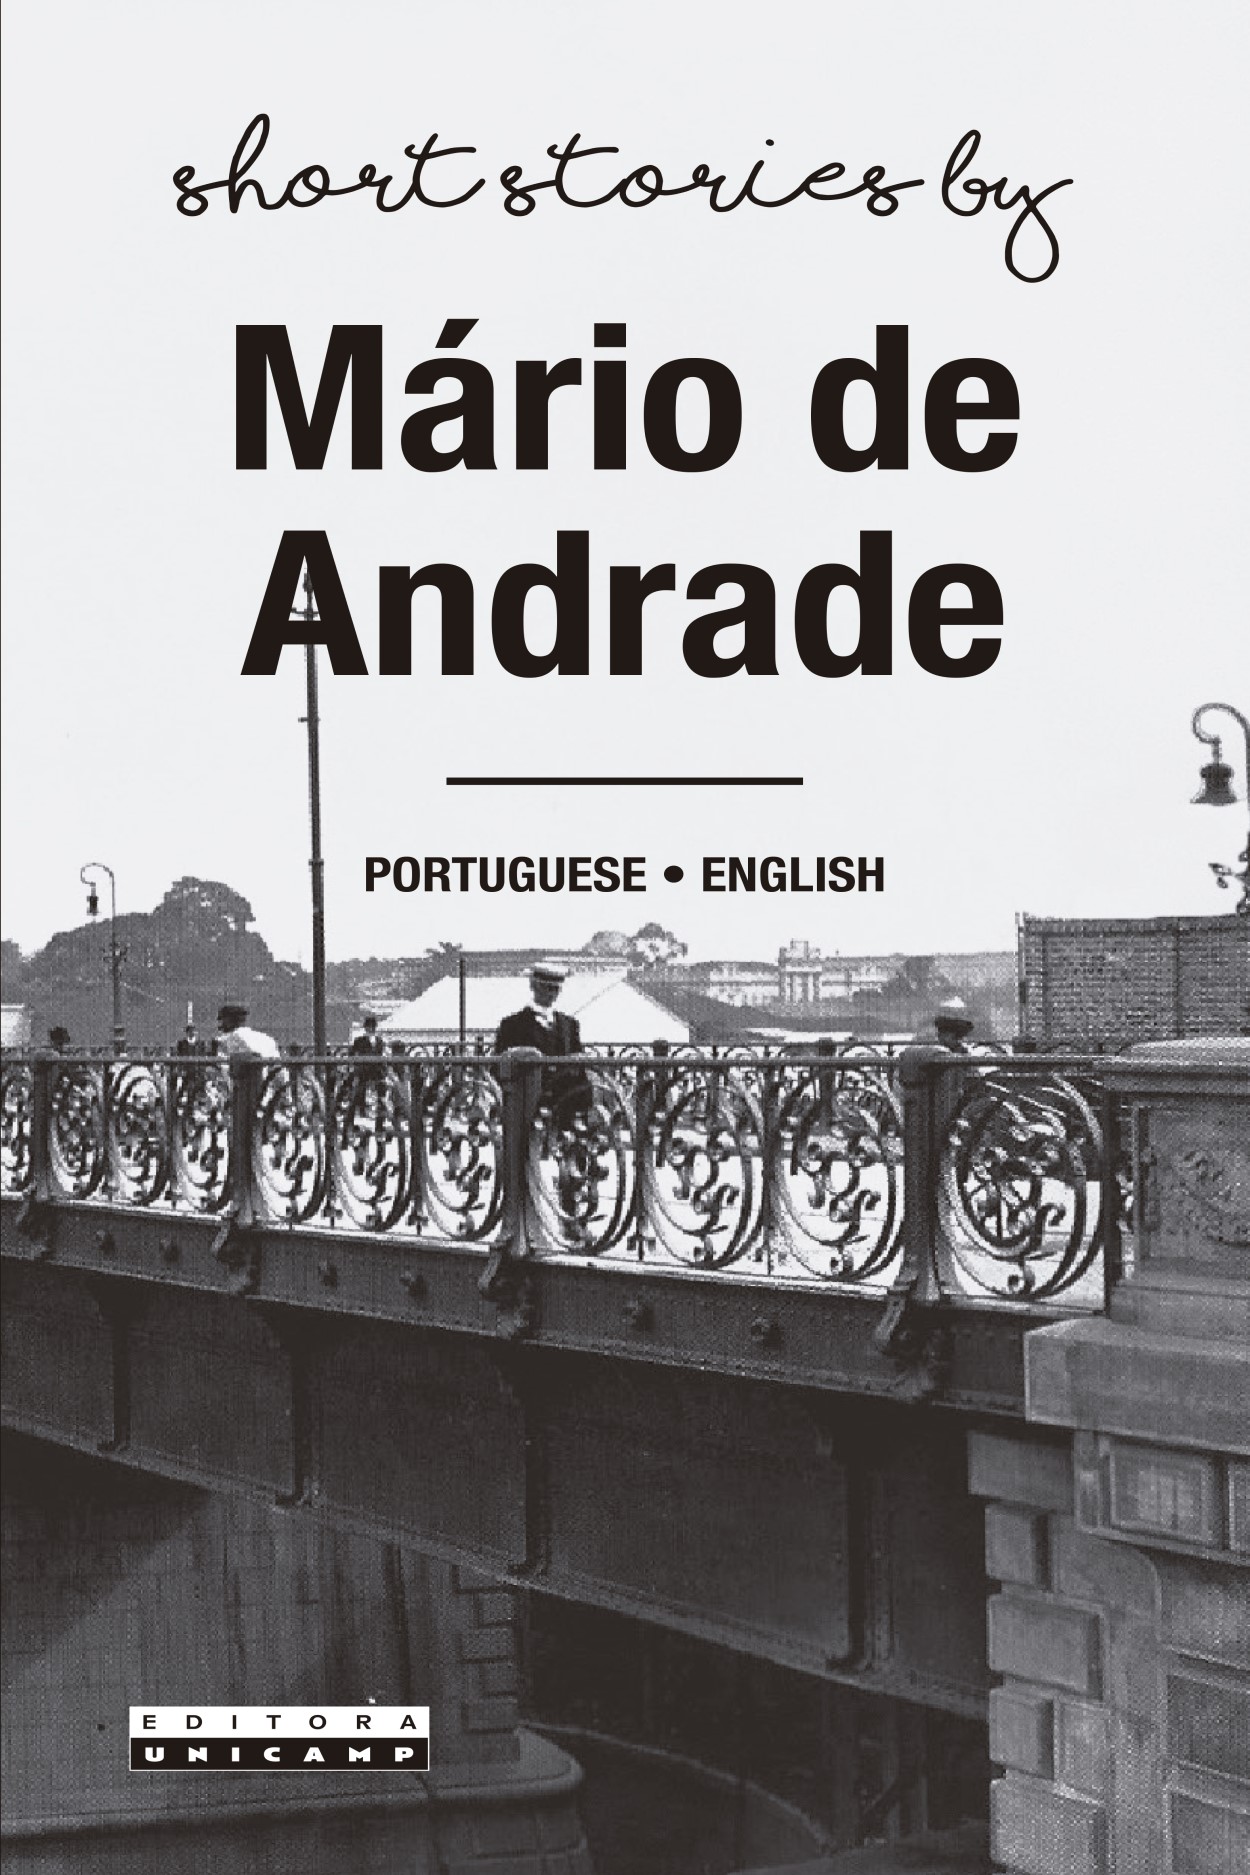 O peru de natal e outros contos — Mário de Andrade by EdLab Press